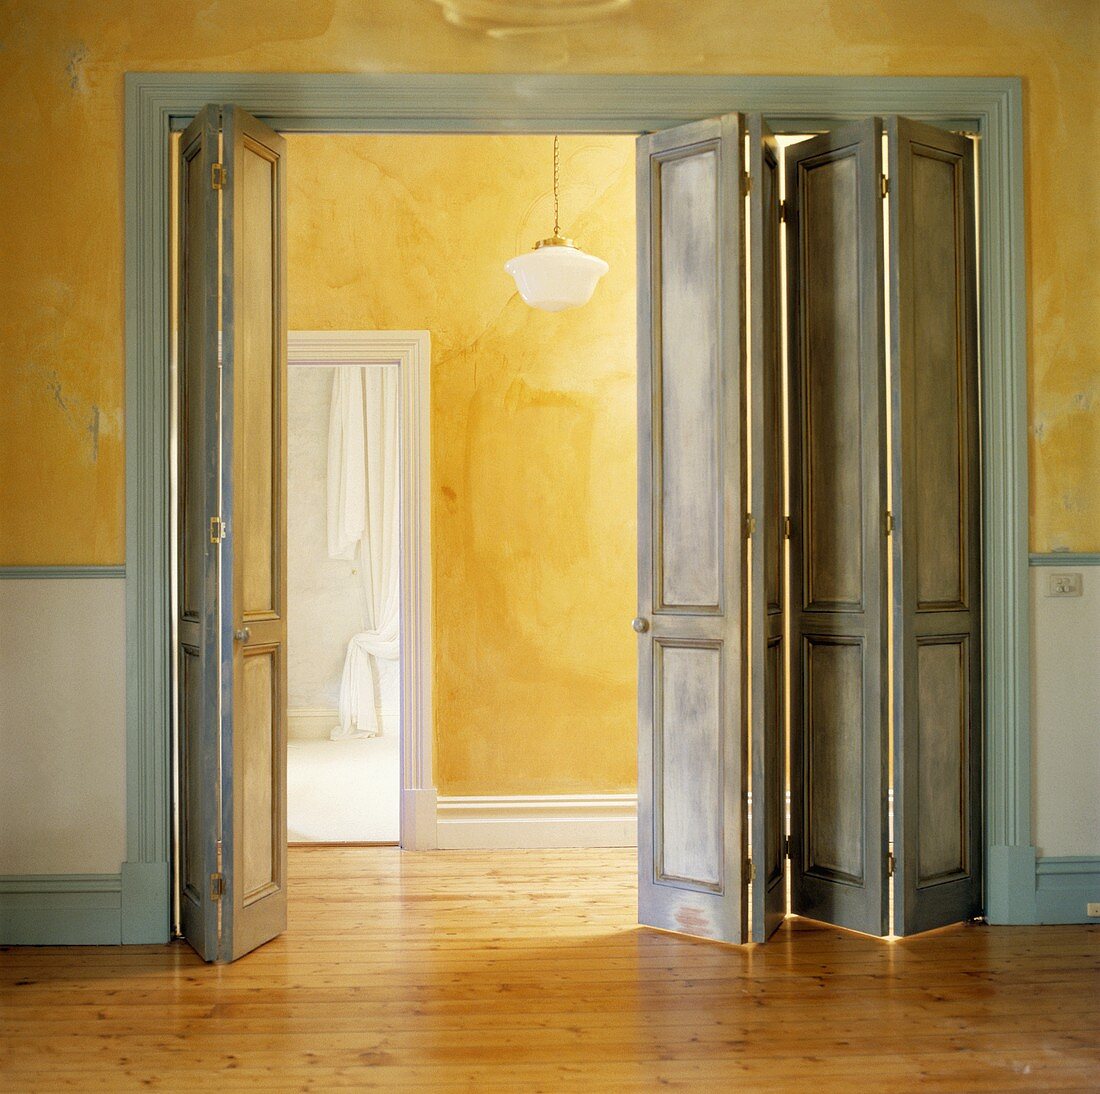 Graublaue Falt-Kassettentüren in gelbem Wohnraum mit Holzboden und Blick auf Korridor